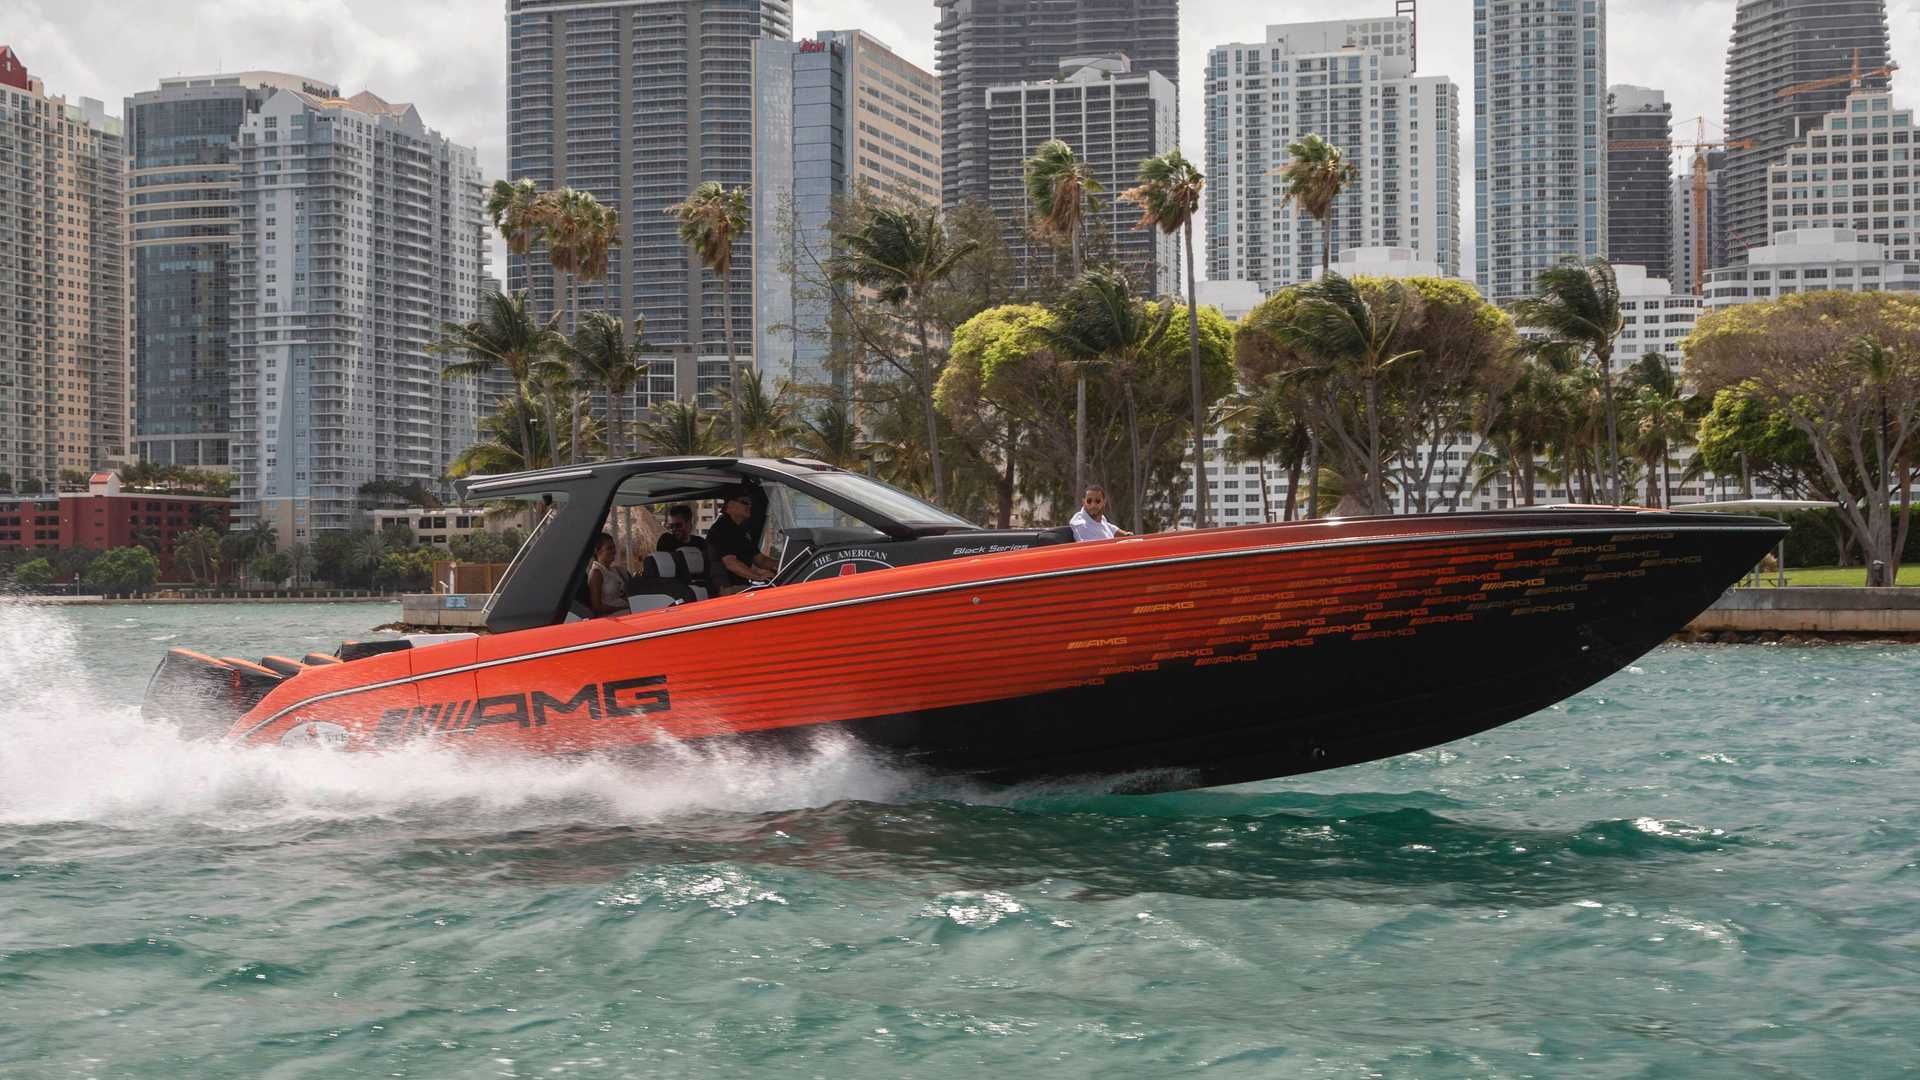 نمای قایق پرسرعت مرسدس آ ام گ نایت هاوک سری سیاه / Mercedes-AMG Black Series Cigarette Boat نارنجی و سیاه رنگ